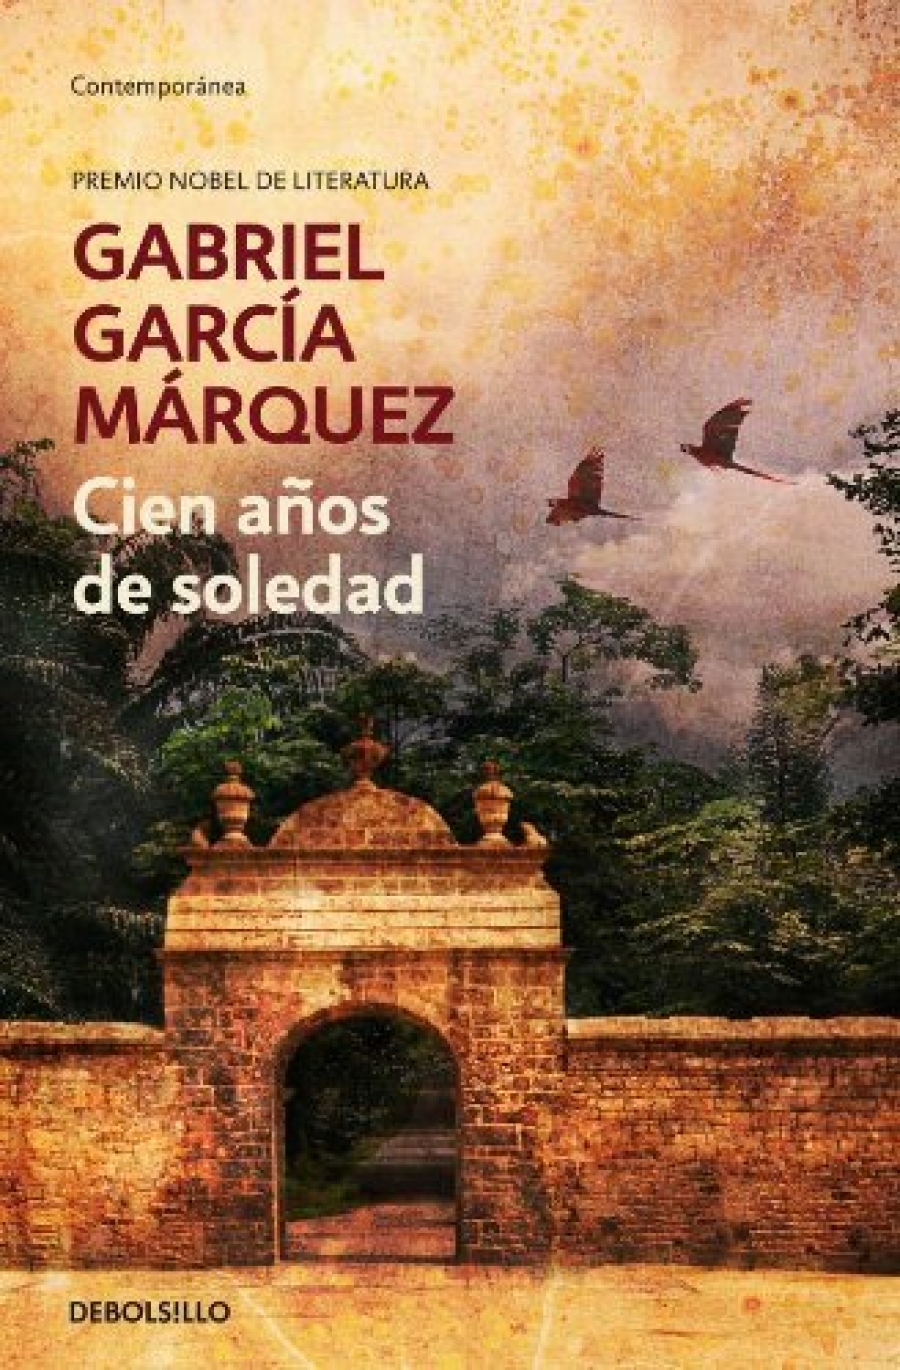 Gabriel Garcia Marquez Cien anos de soledad 